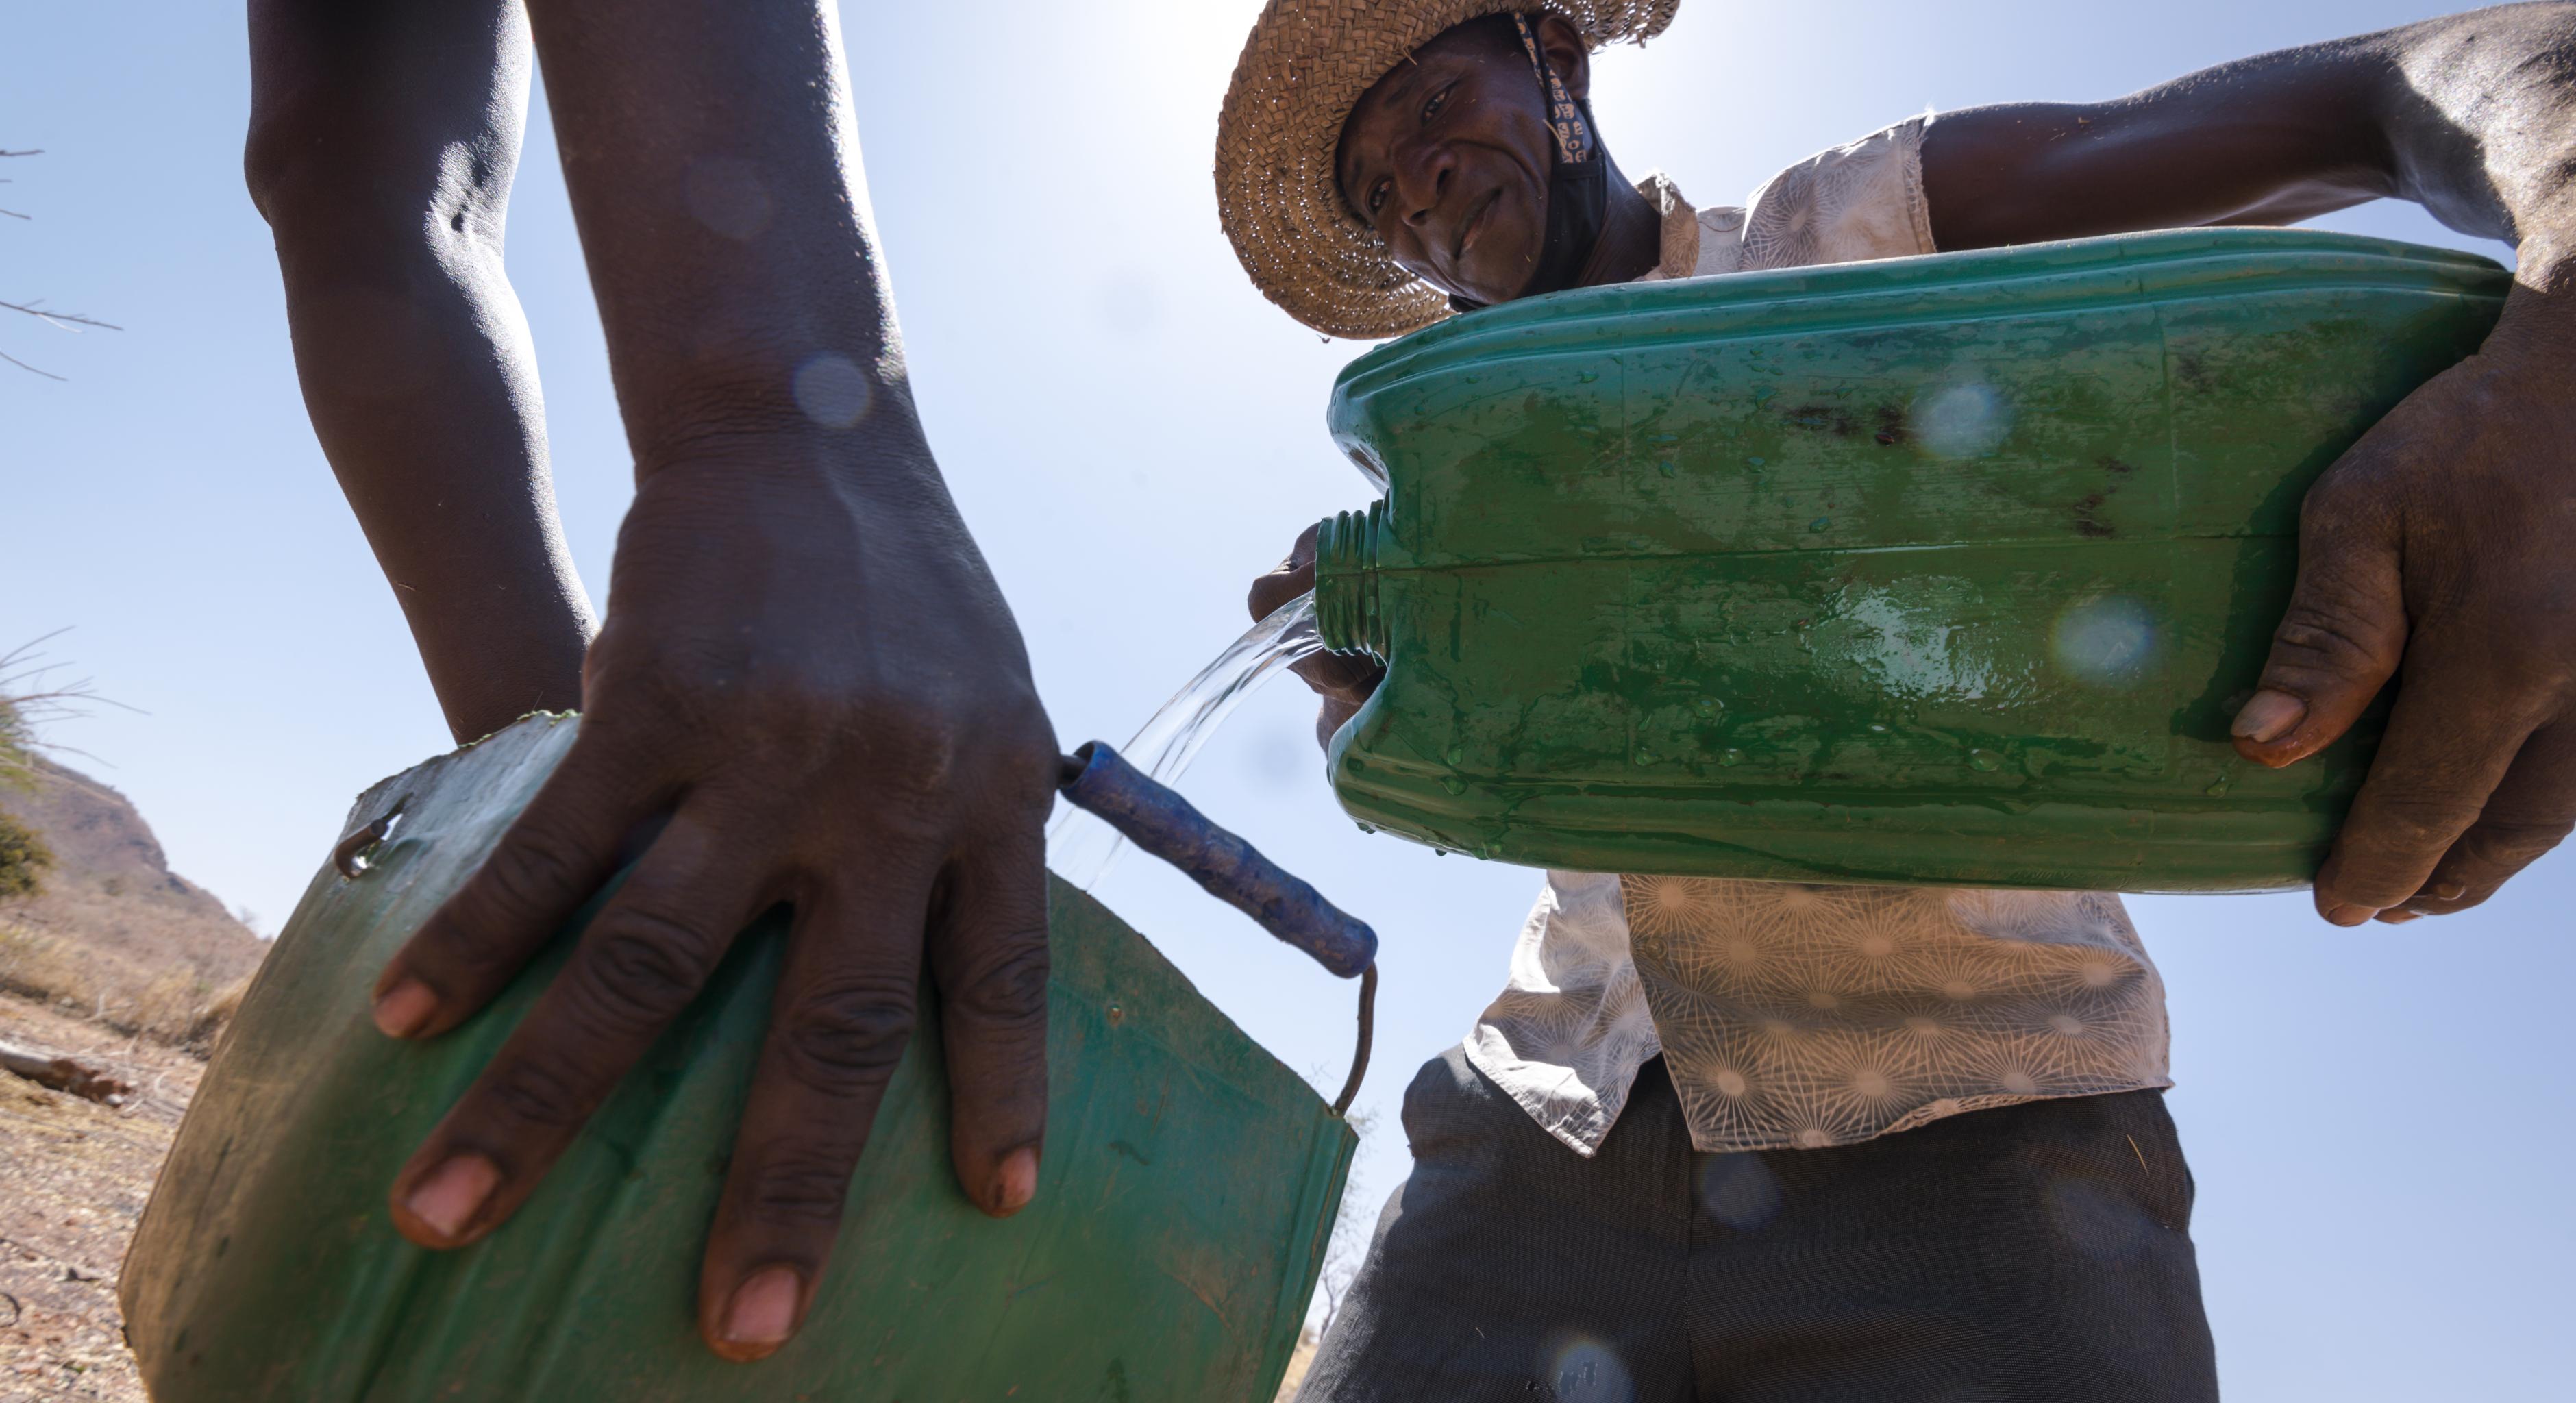 Samuel Sawadogo teilt Wasser auf zwei grüne Wasserkanister auf. Er trägt einen Hut zum Schutz vor der Sonne, ein beige-gemustertes Hemd und eine dunkle Hose. Man sieht links die Hände einer weiteren Person, die den zweiten Kanister hält.